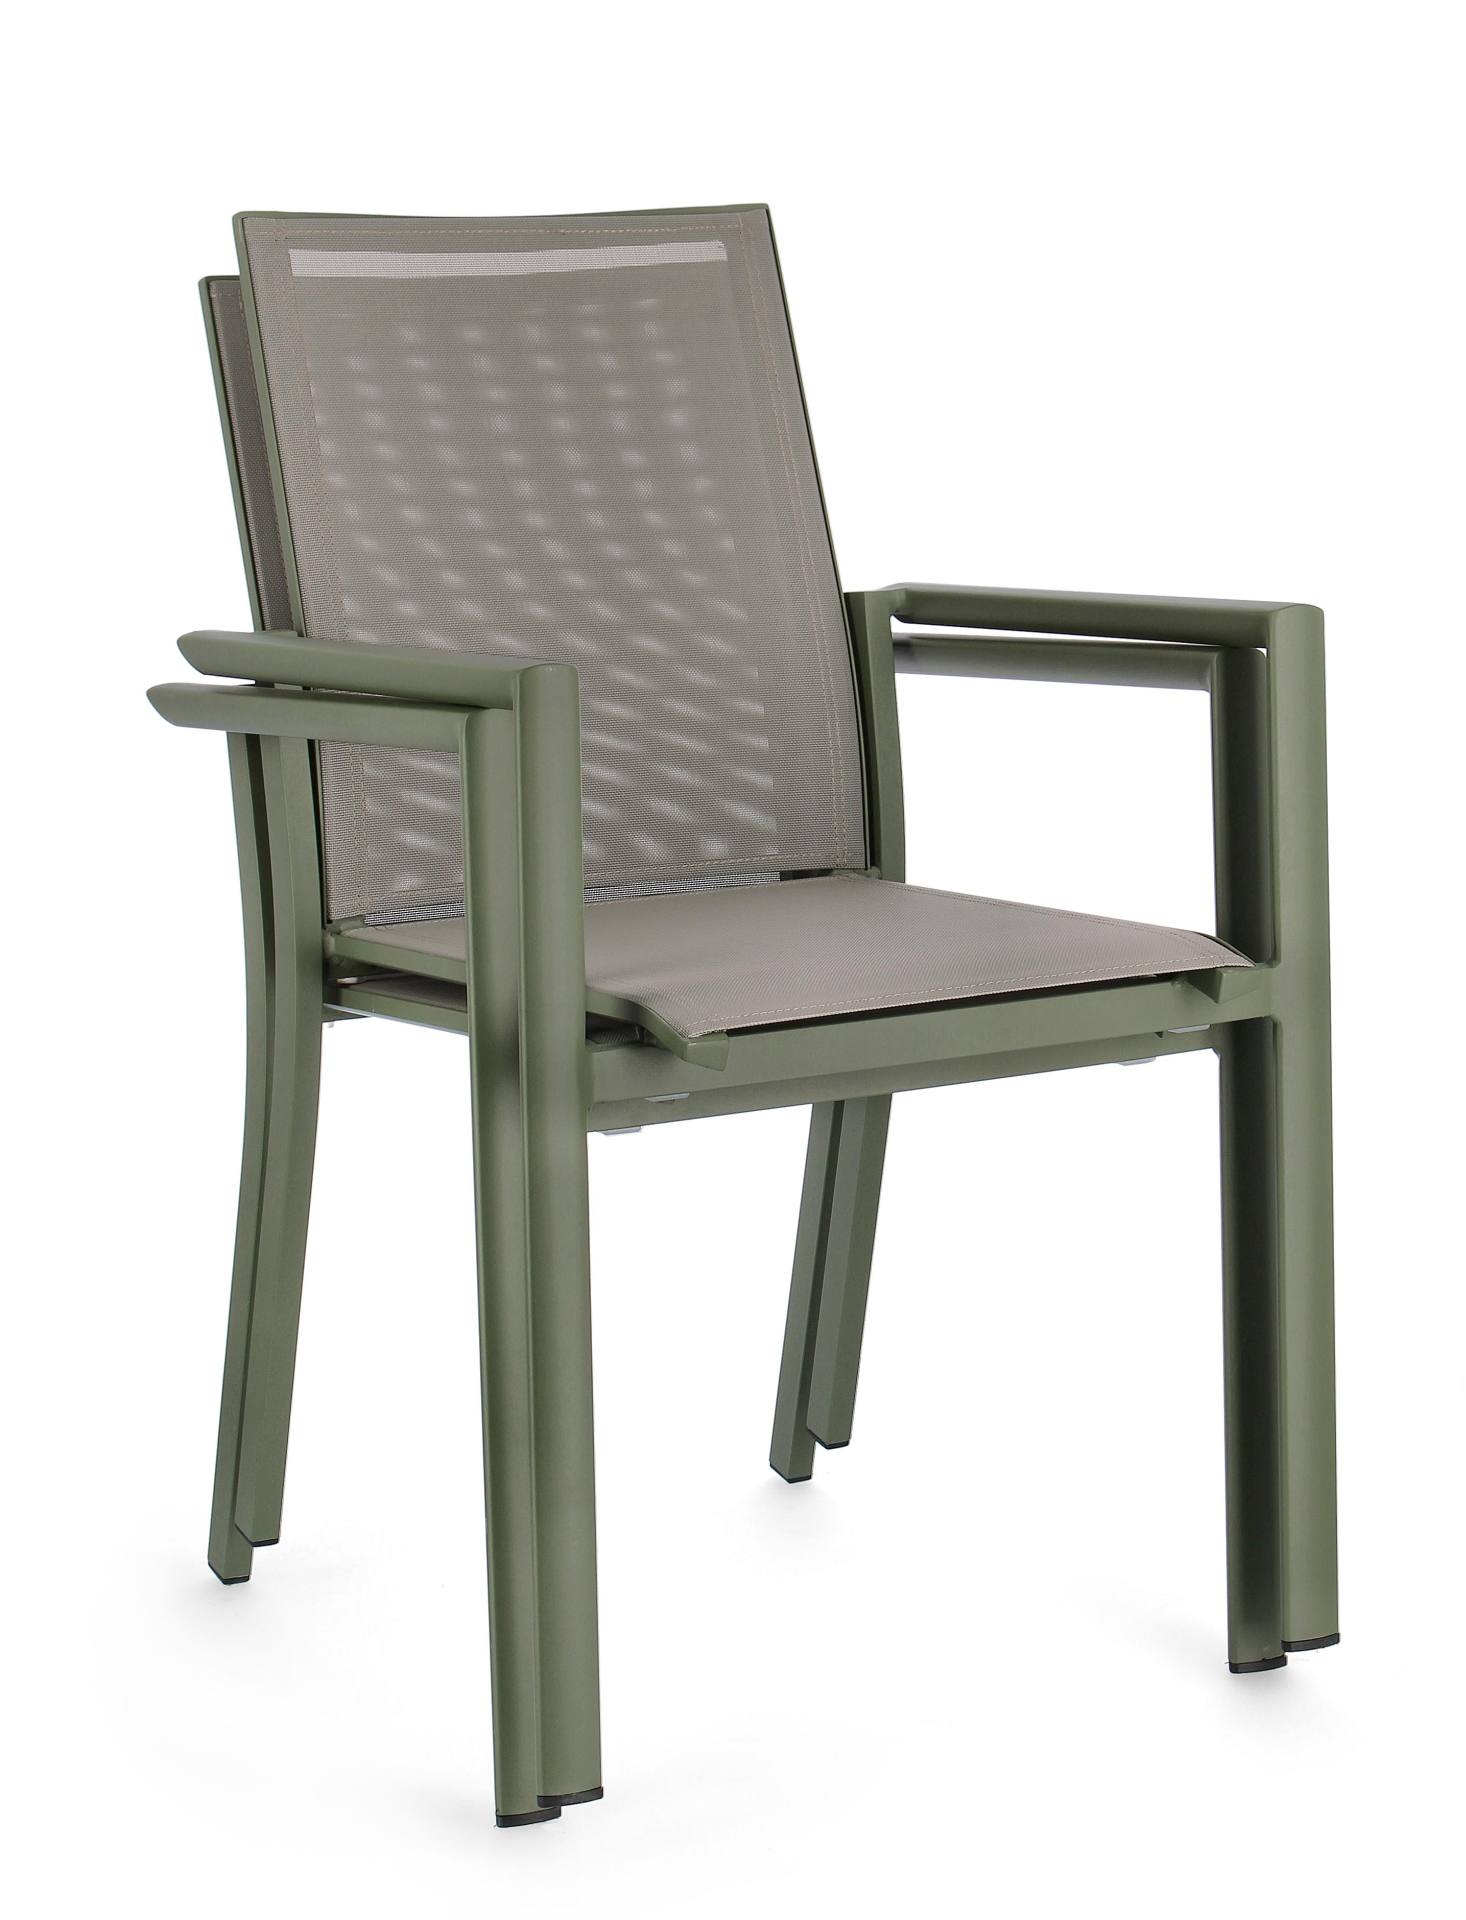 Der Gartenstuhl Konnor überzeugt mit seinem modernen Design. Gefertigt wurde er aus Textilene, welcher einen grauen Farbton besitzt. Das Gestell ist aus Aluminium und hat eine grüne Farbe. Der Stuhl verfügt über eine Sitzhöhe von 45 cm und ist für den Out